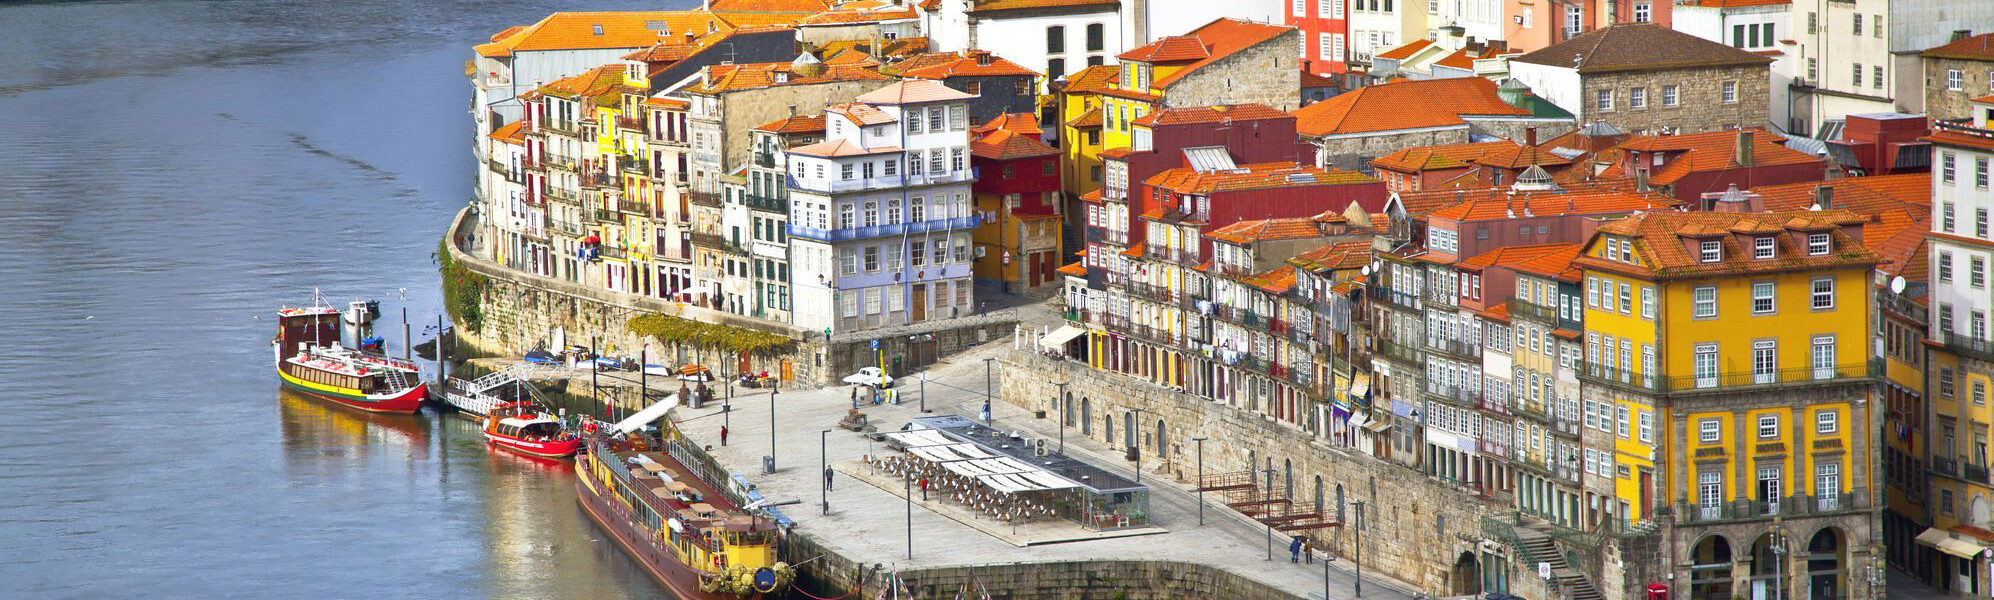 Op reis met de camper door Portugal - Porto